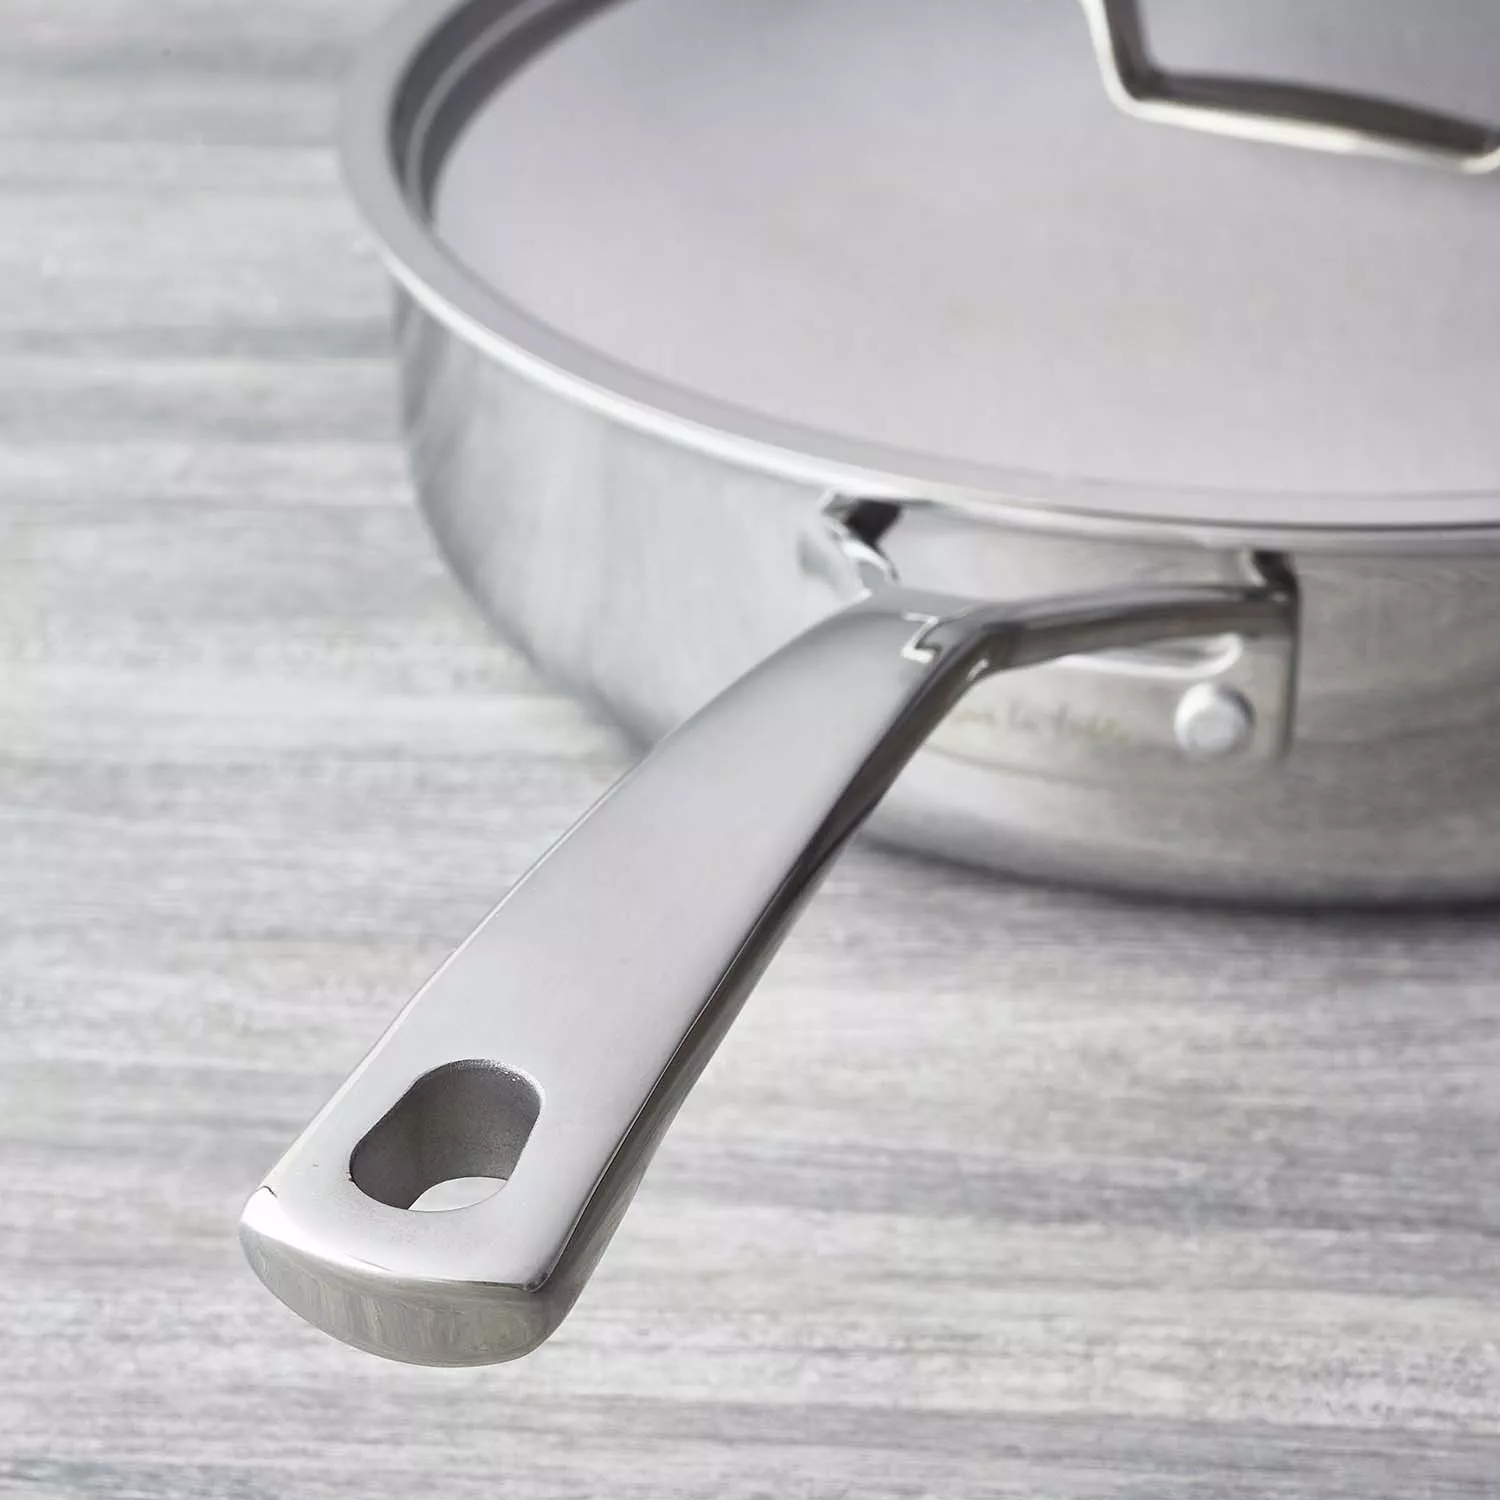  Sur La Table Classic 5-Ply Stainless Steel Sauté Pan, 5 Qt,  Silver: Home & Kitchen